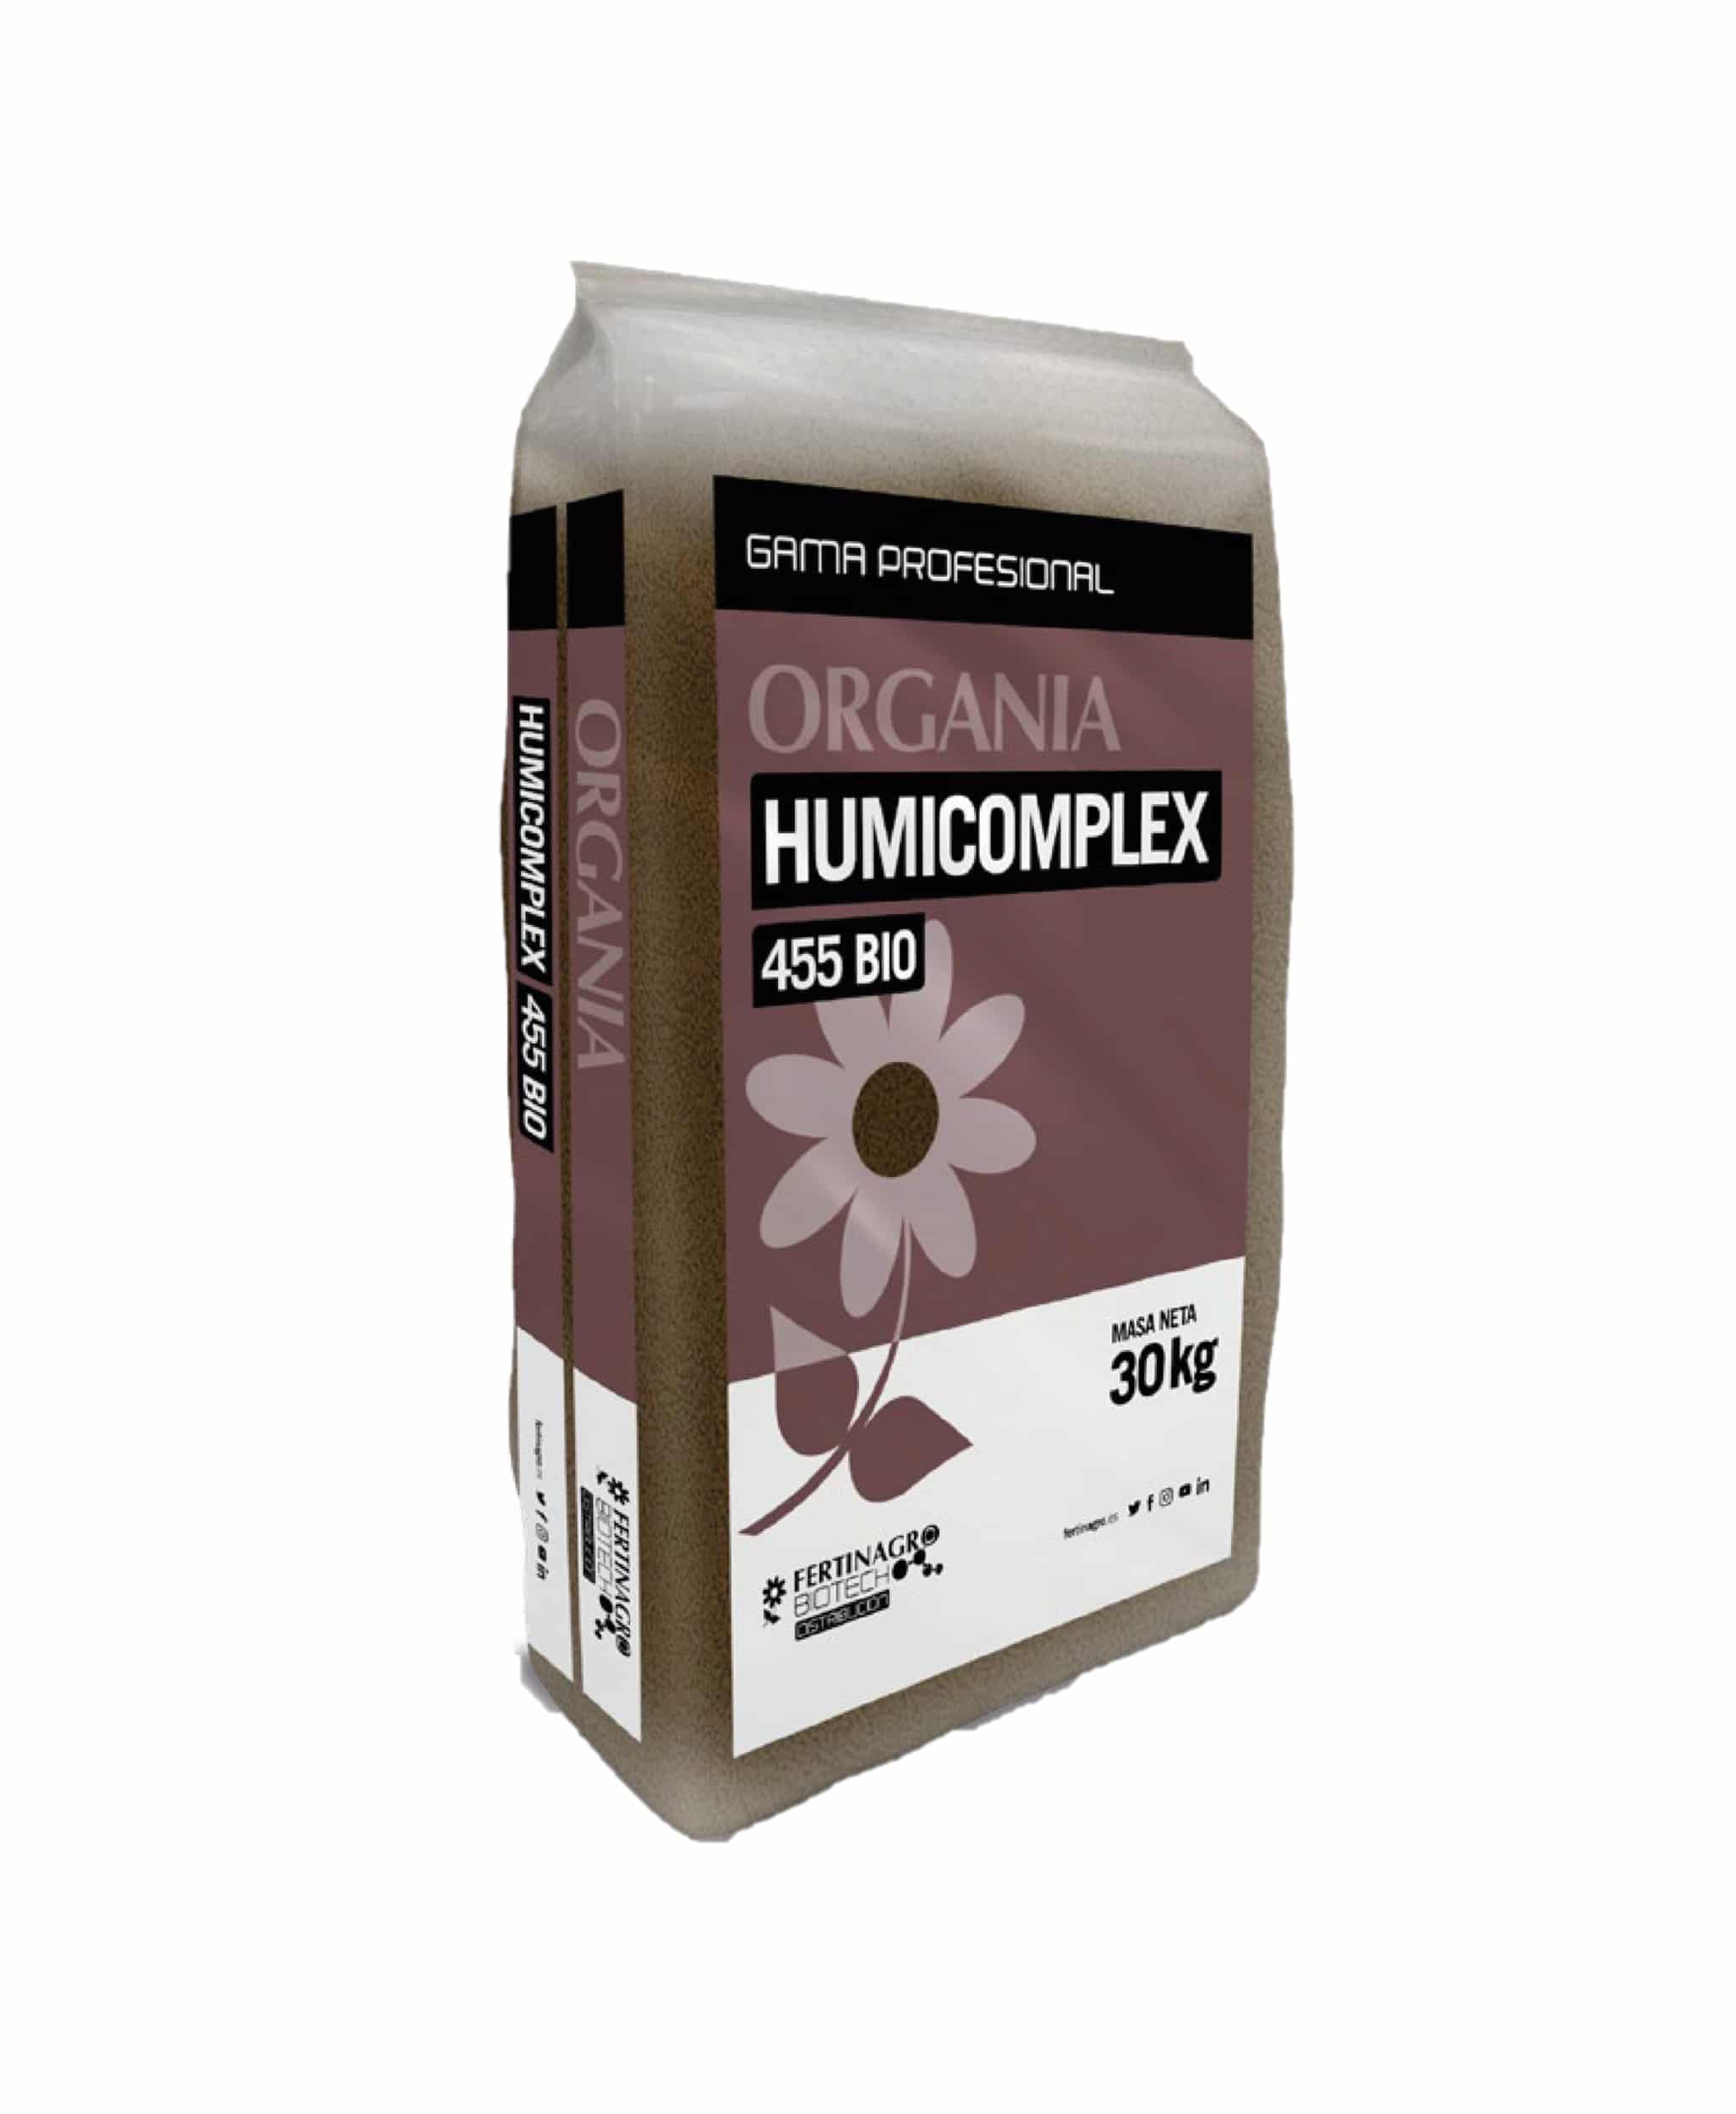 ORGANIA HUMICOMPLEX 455 BIO